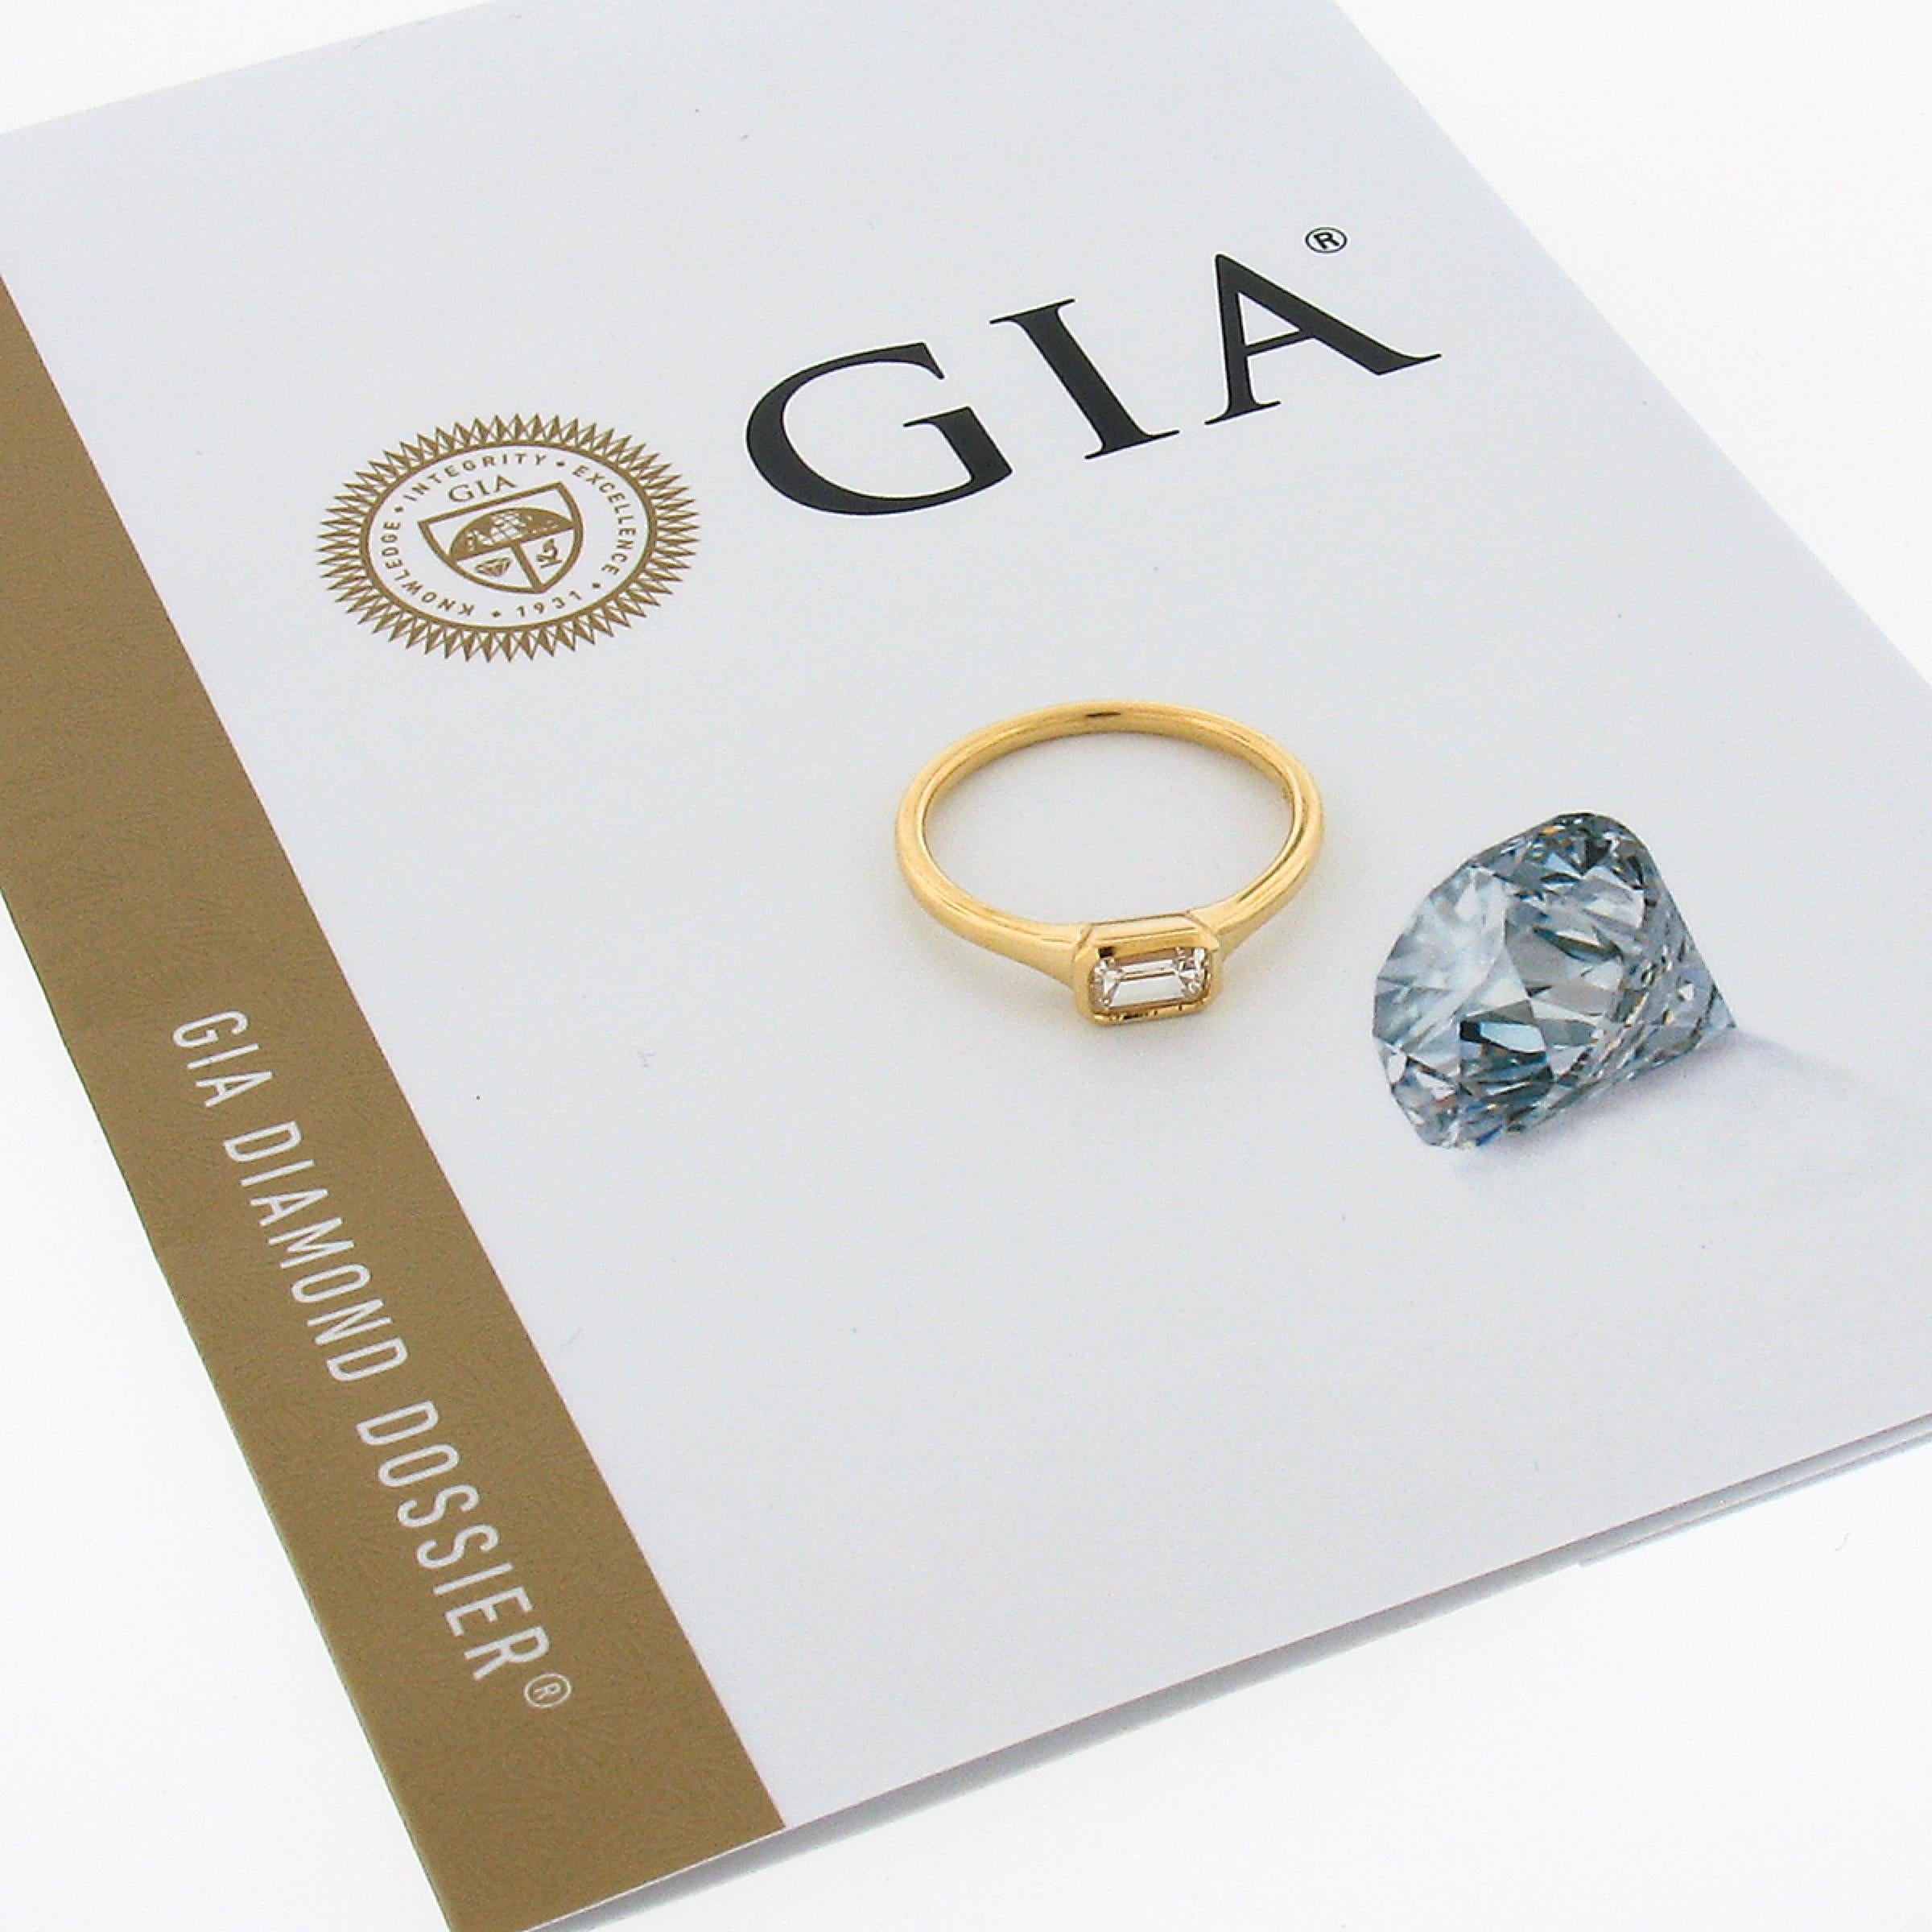 Nous avons ici une bague solitaire en diamant simple, mais absolument magnifique, qui a été récemment fabriquée en or jaune massif 18k. Le solitaire certifié par le GIA a une taille émeraude et est soigneusement serti latéralement au centre de la